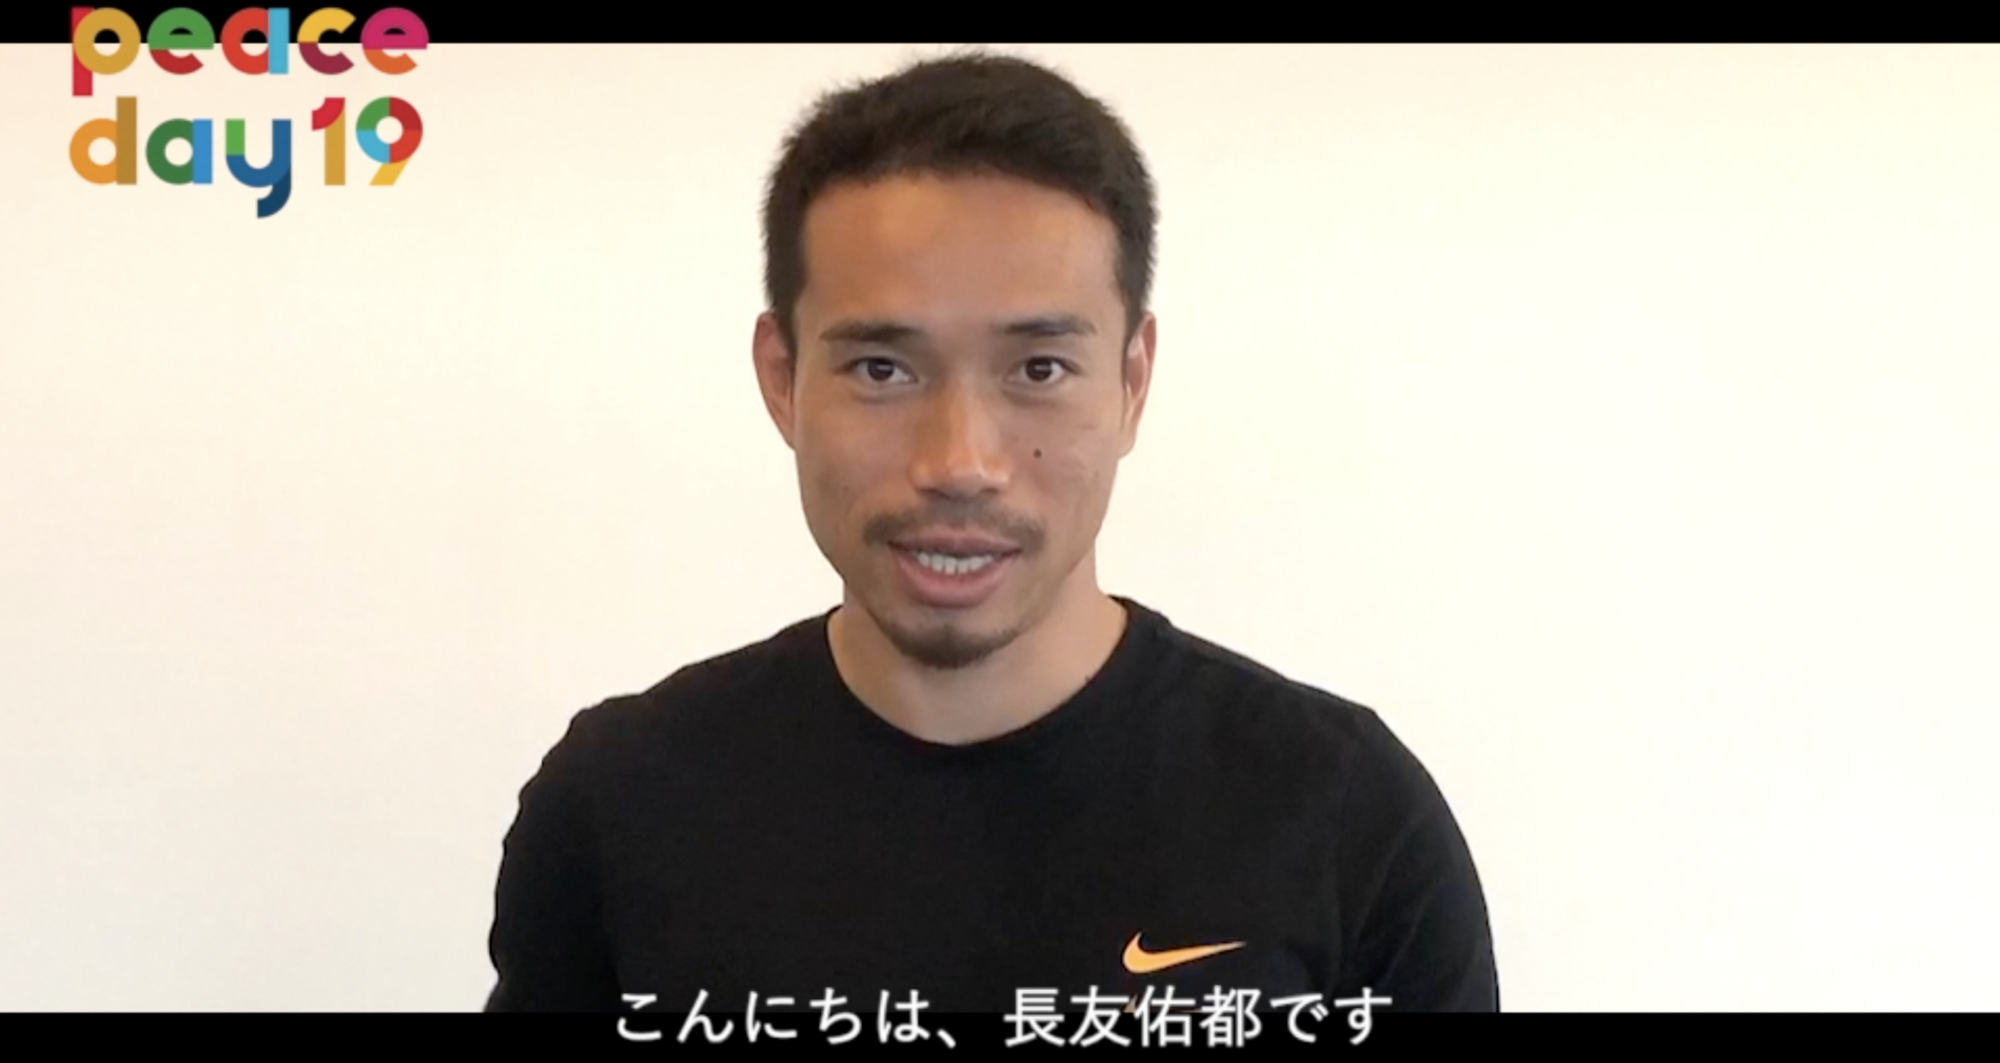 サッカー日本代表の長友佑都選手からの動画メッセージ Peace Day19